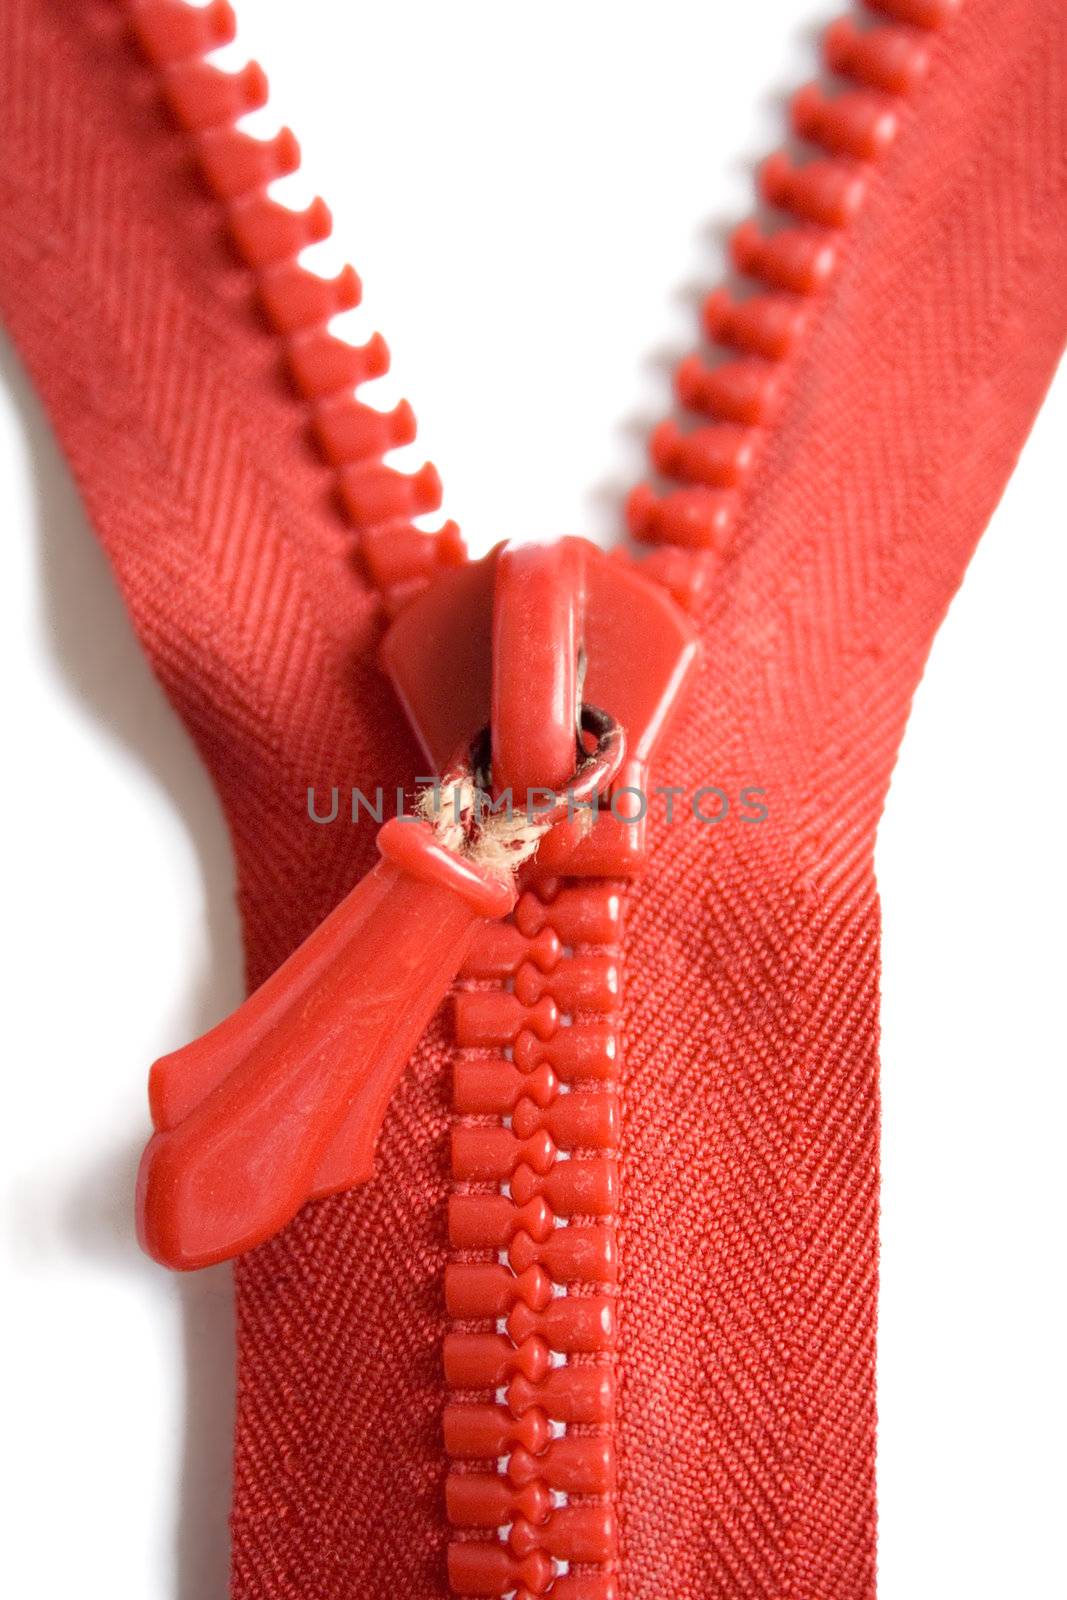 Red Zipper by winterling